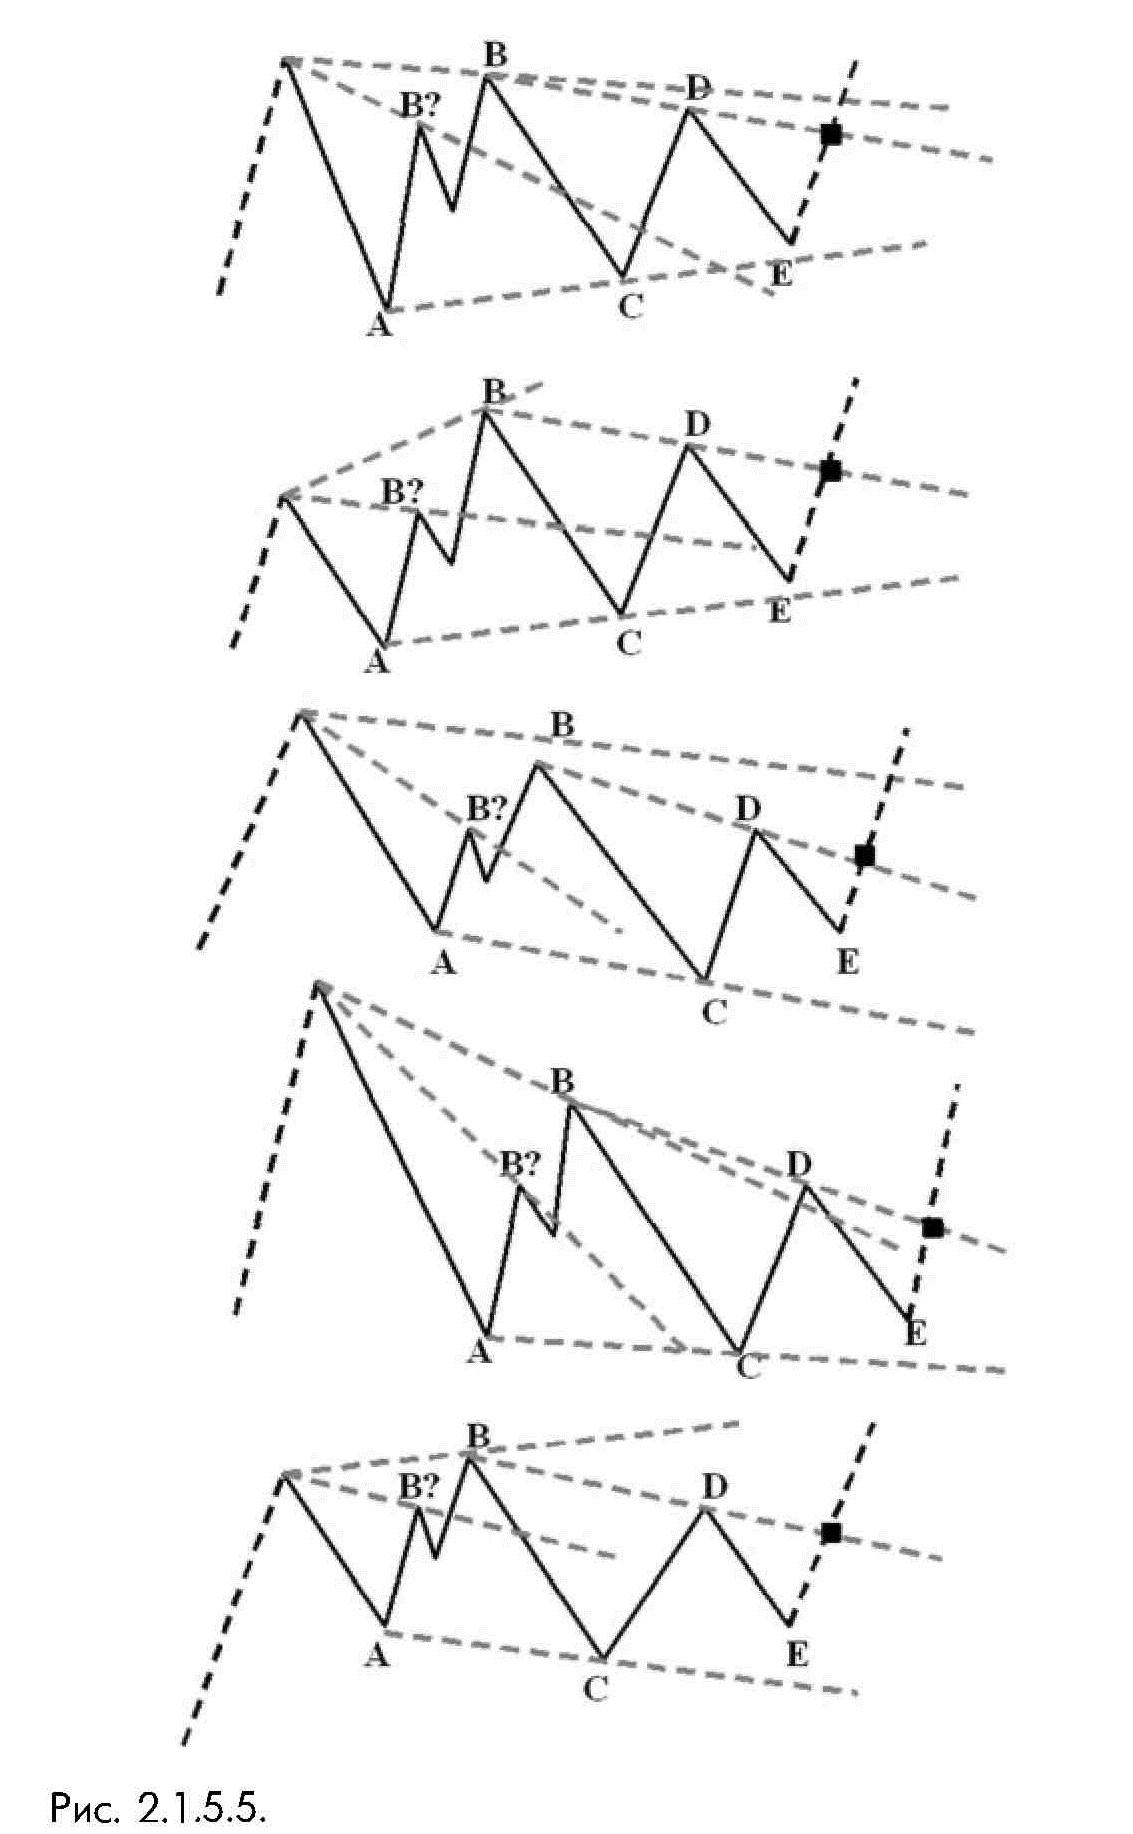 2_1_5_5_ Сигнальная линия В - D проводится по точкам завершения волн В и D сужающегося треугольника